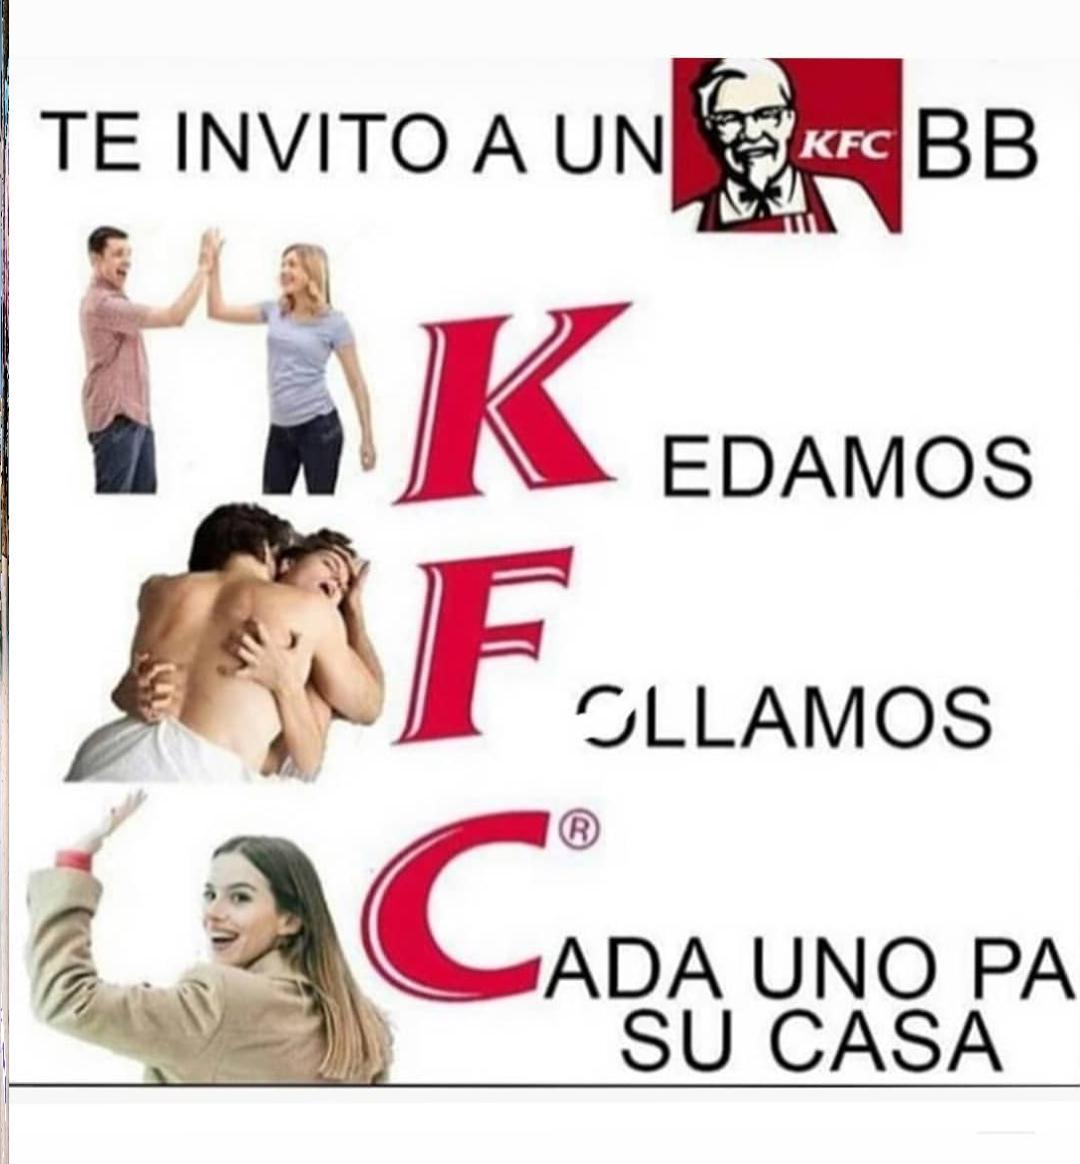 KFC soo god - meme